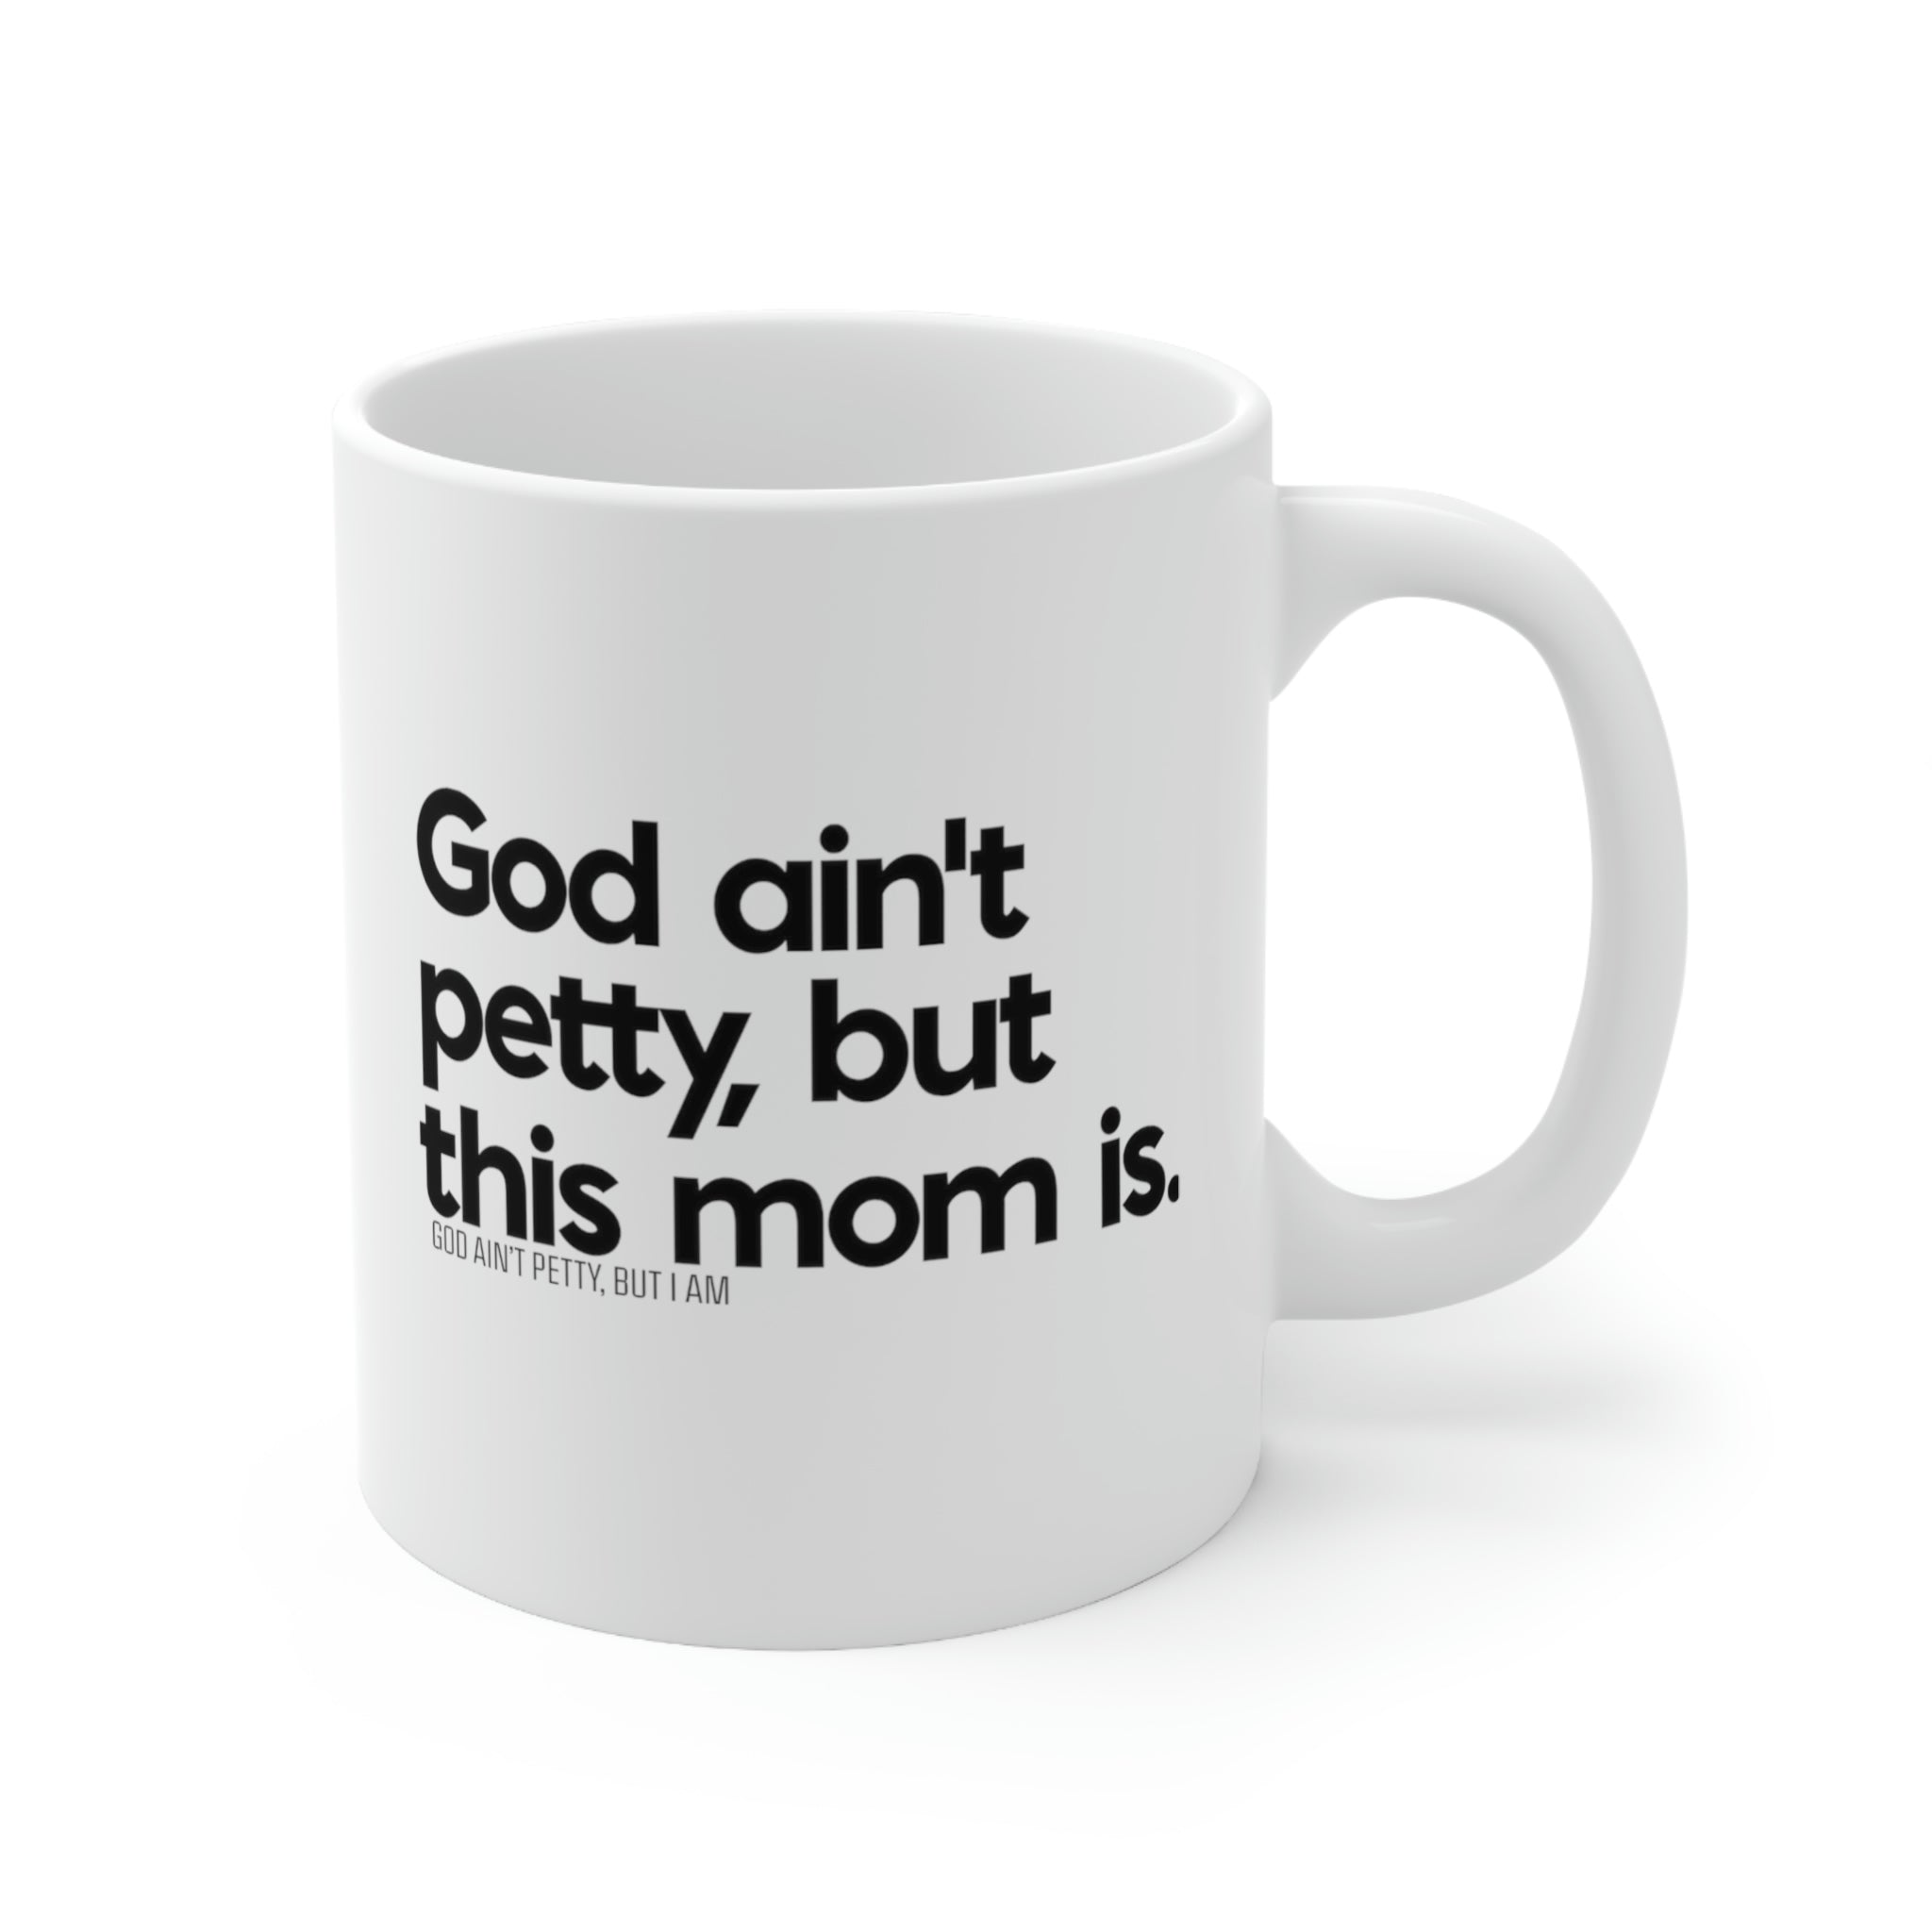 God ain't petty but this mom is Mug 11oz (White/Black)-Mug-The Original God Ain't Petty But I Am